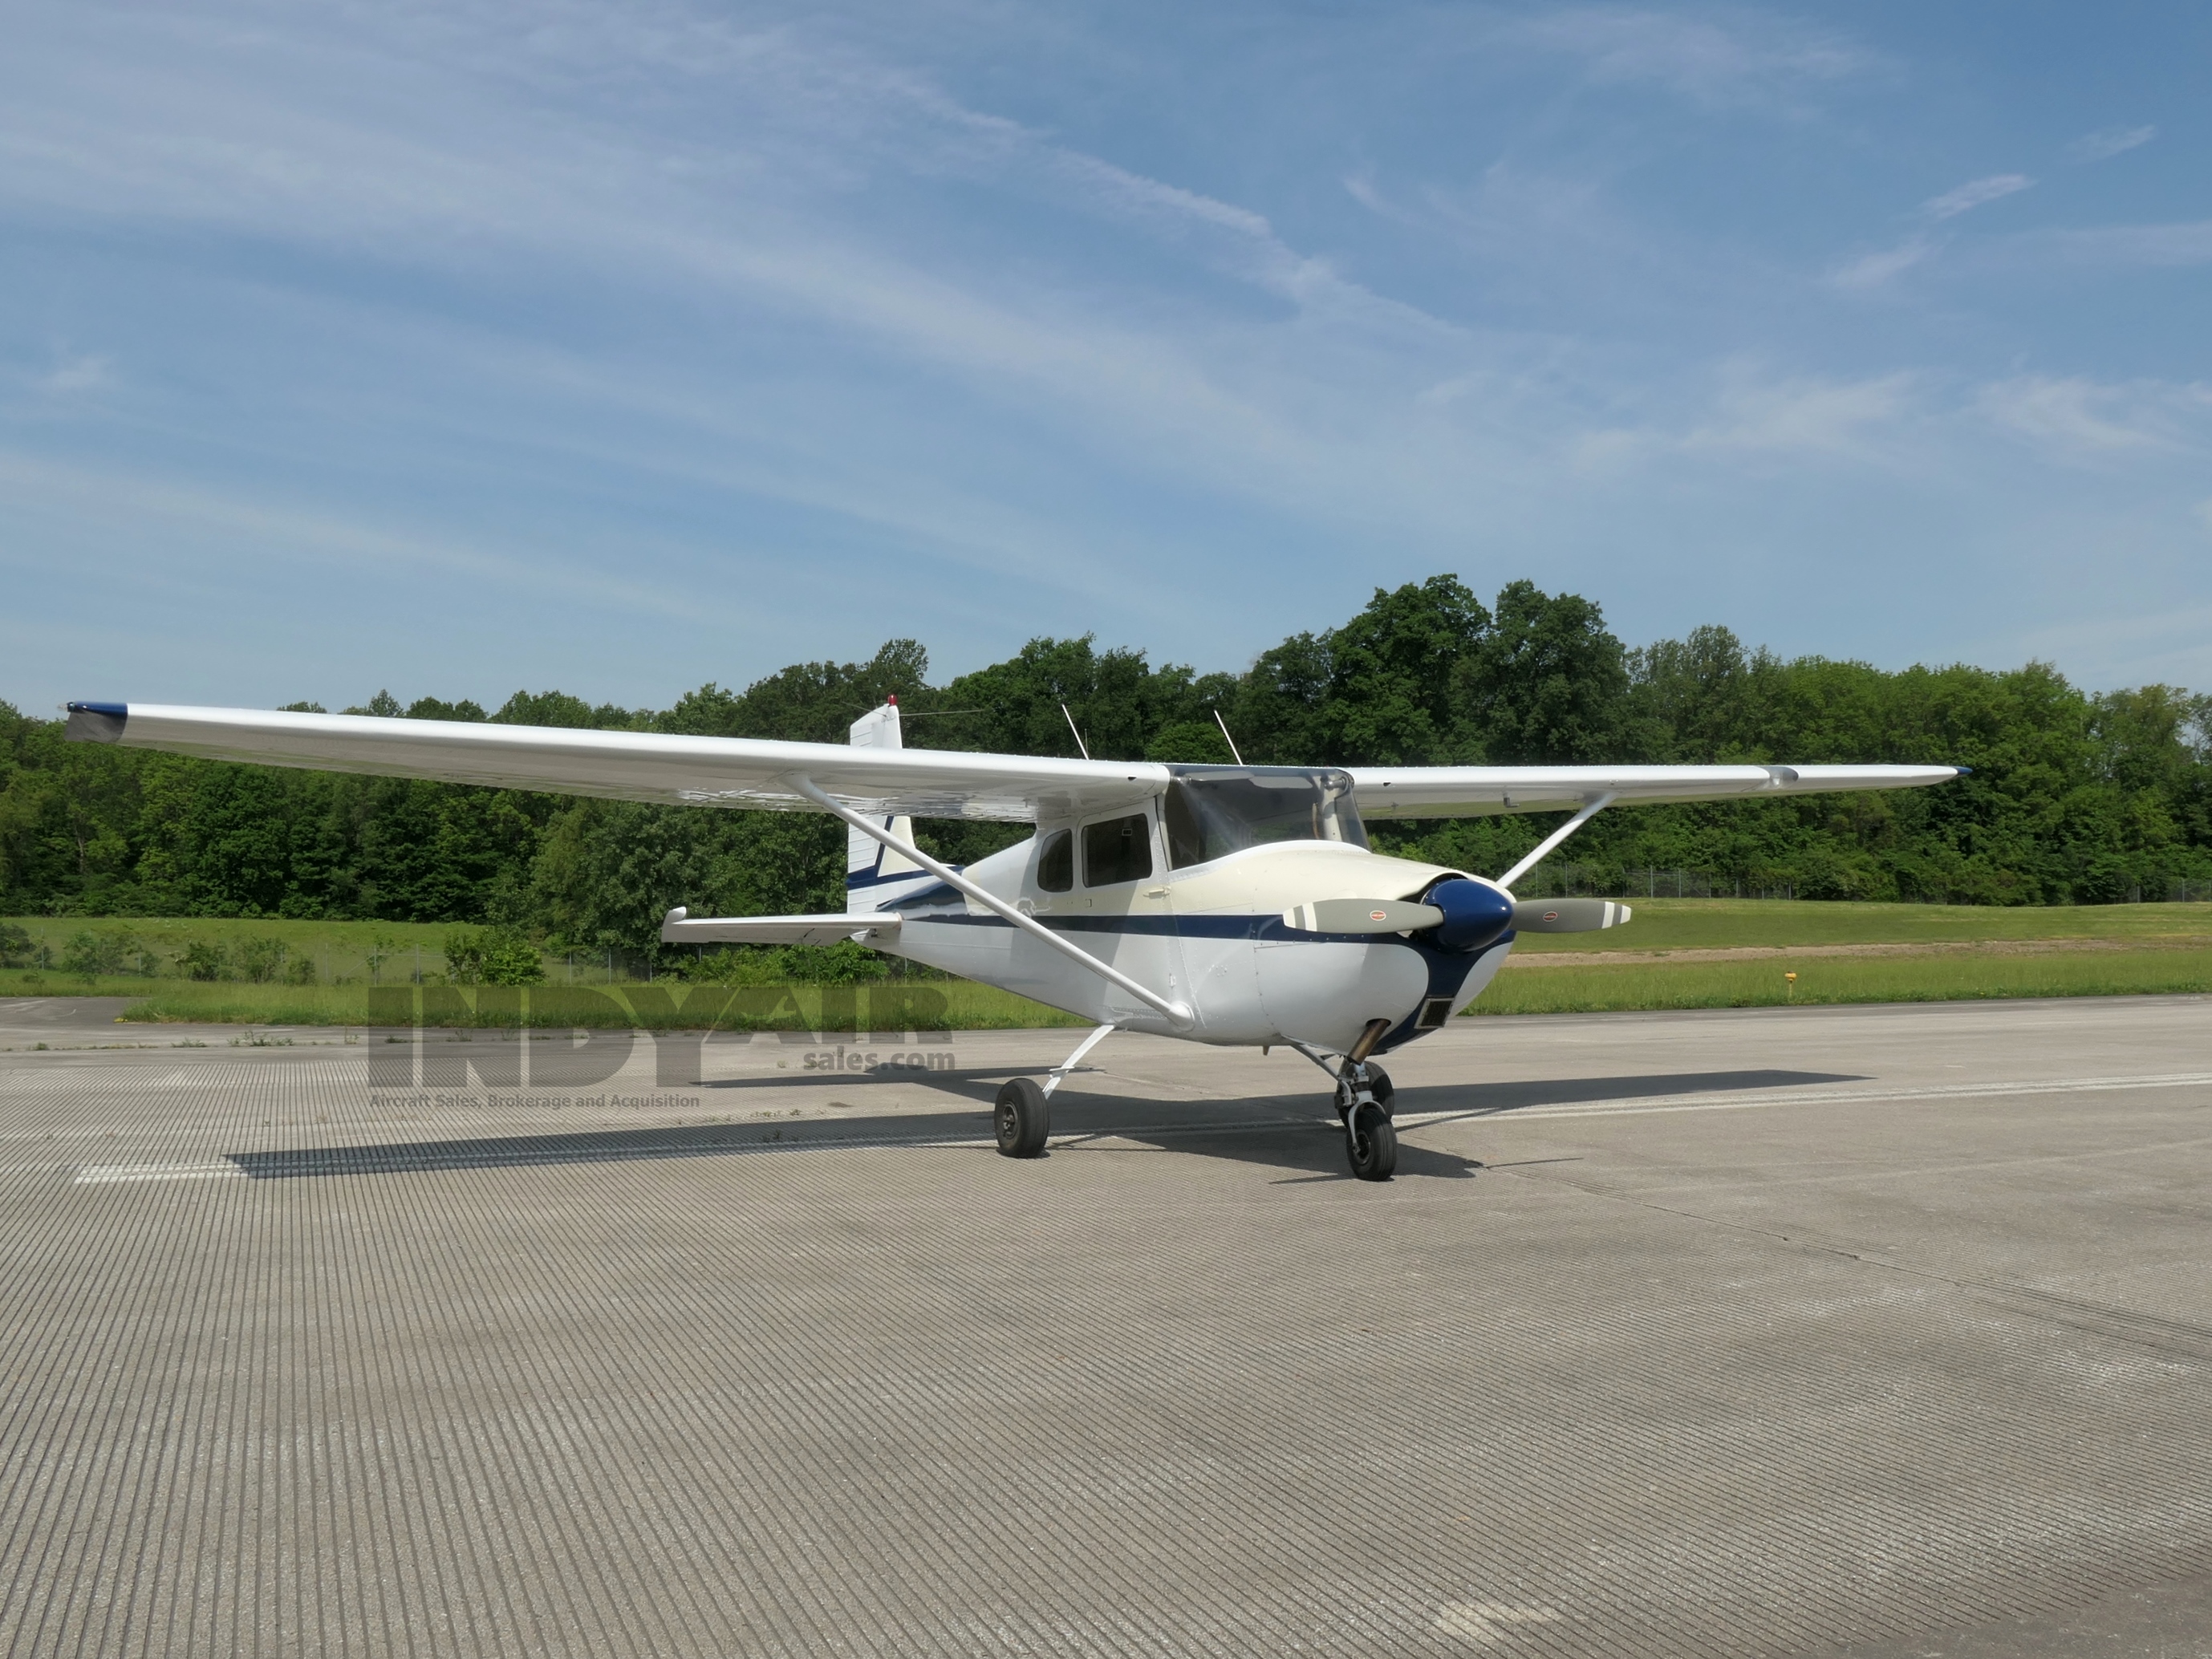 Cessna 172 180 HP - N8399B